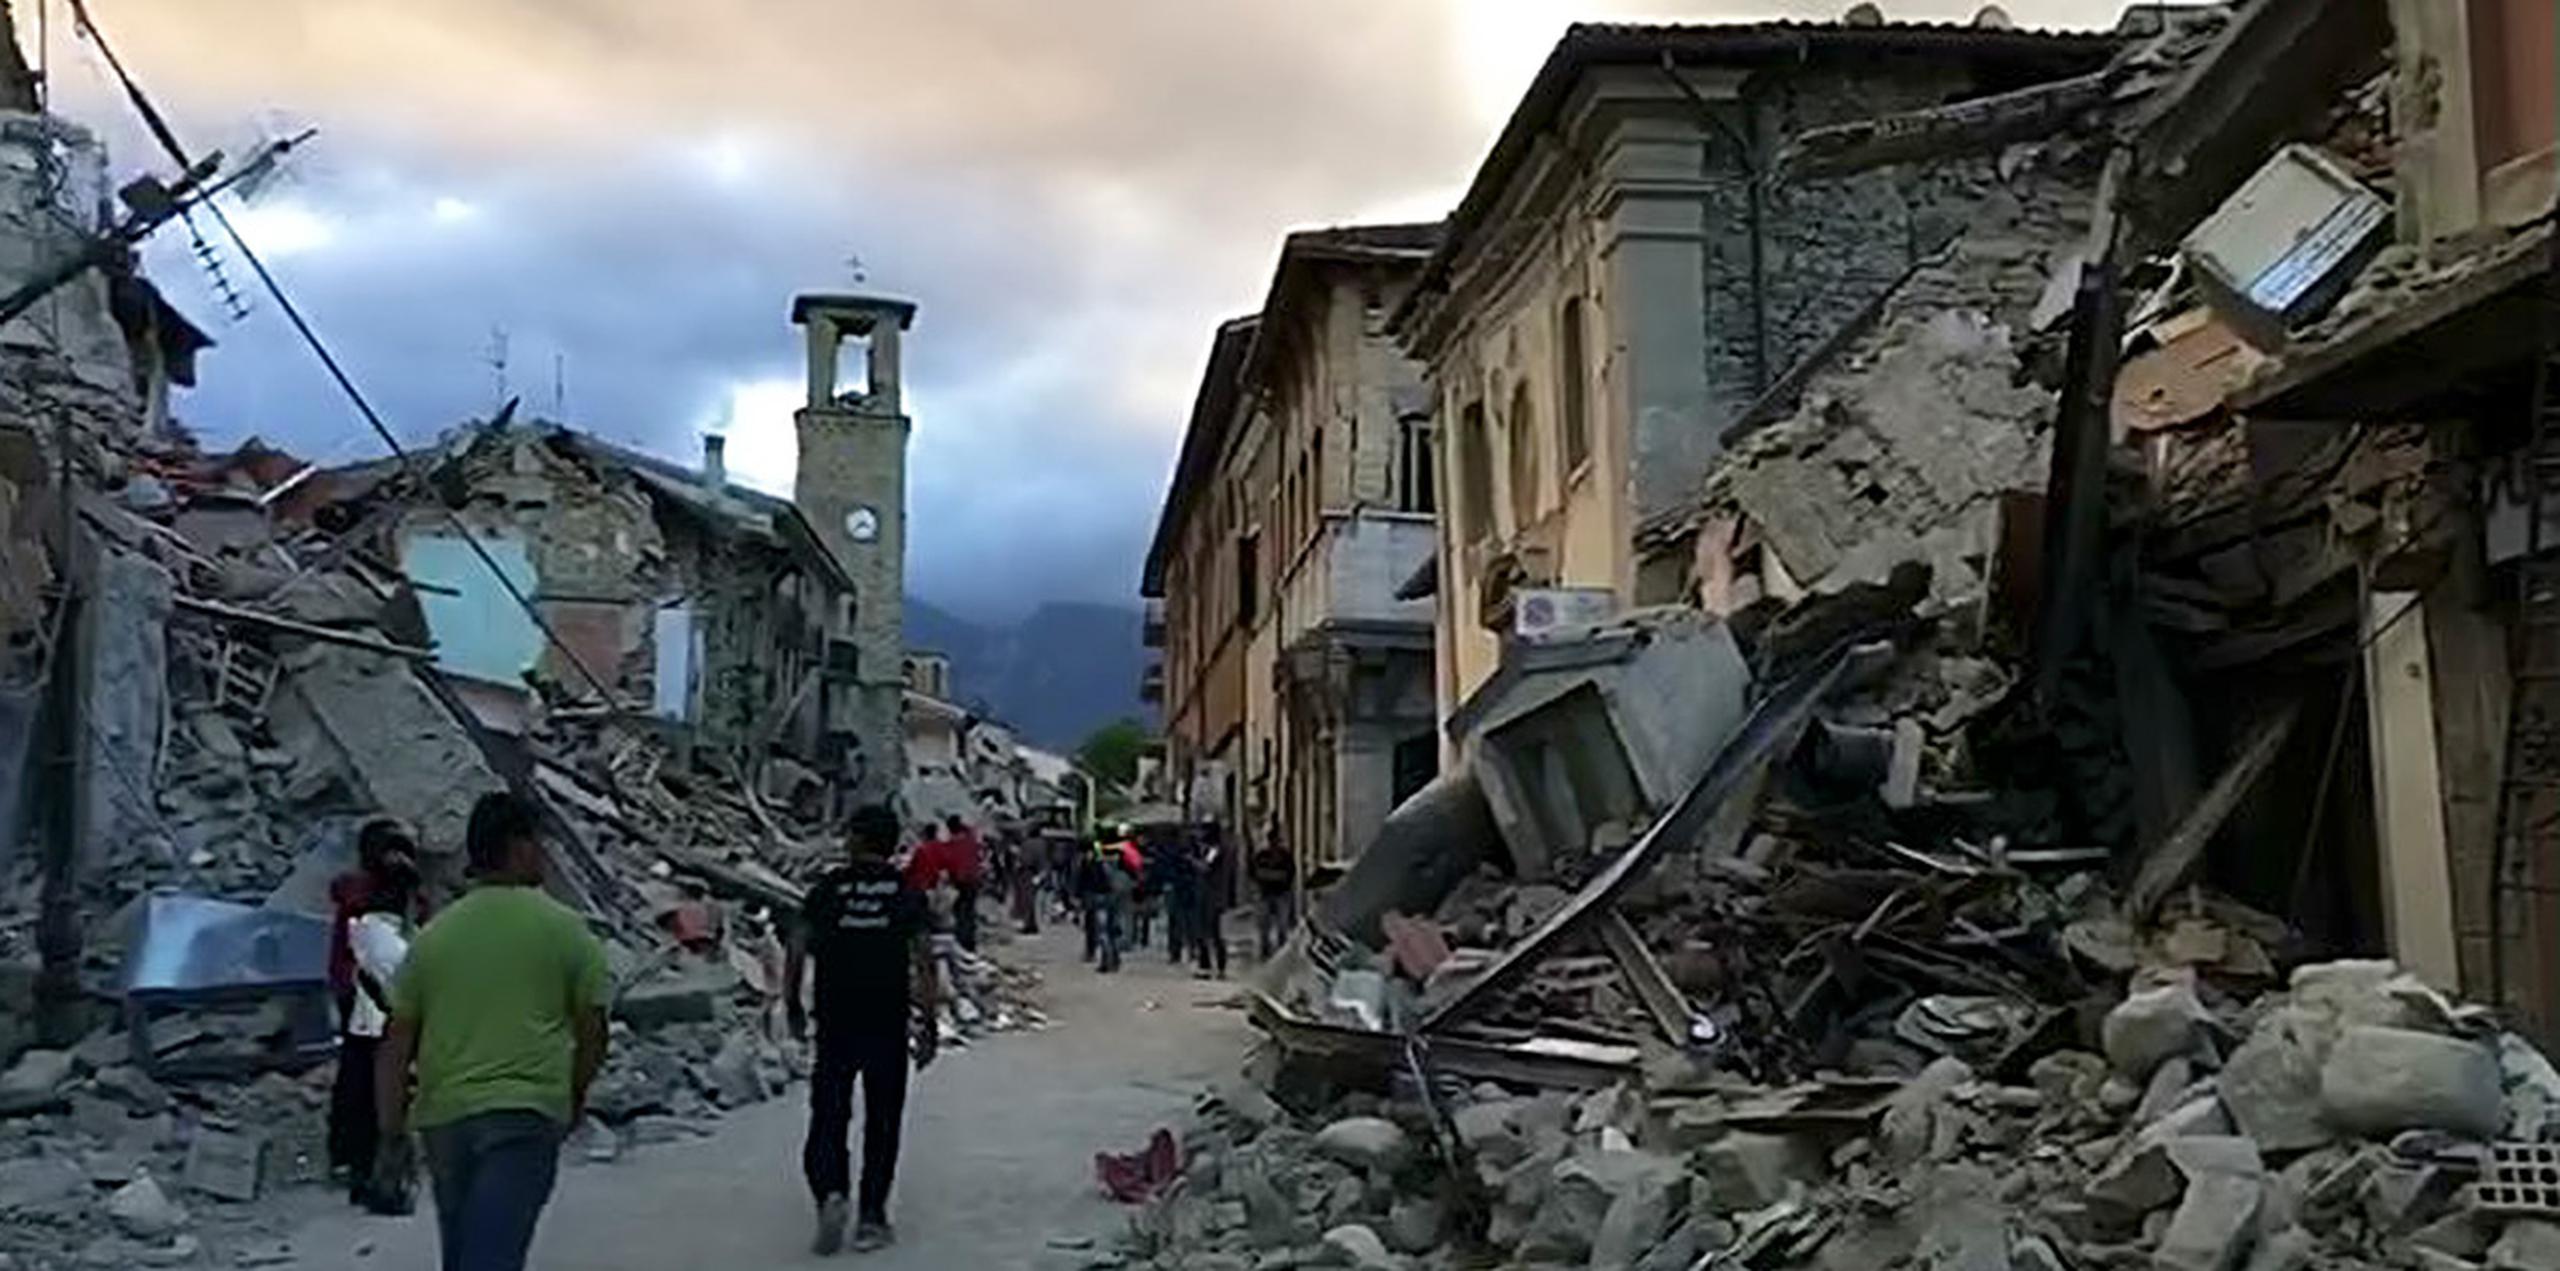 El centro de Amatrice quedó arrasado, con palazzos enteros reducidos a escombros. (AP)